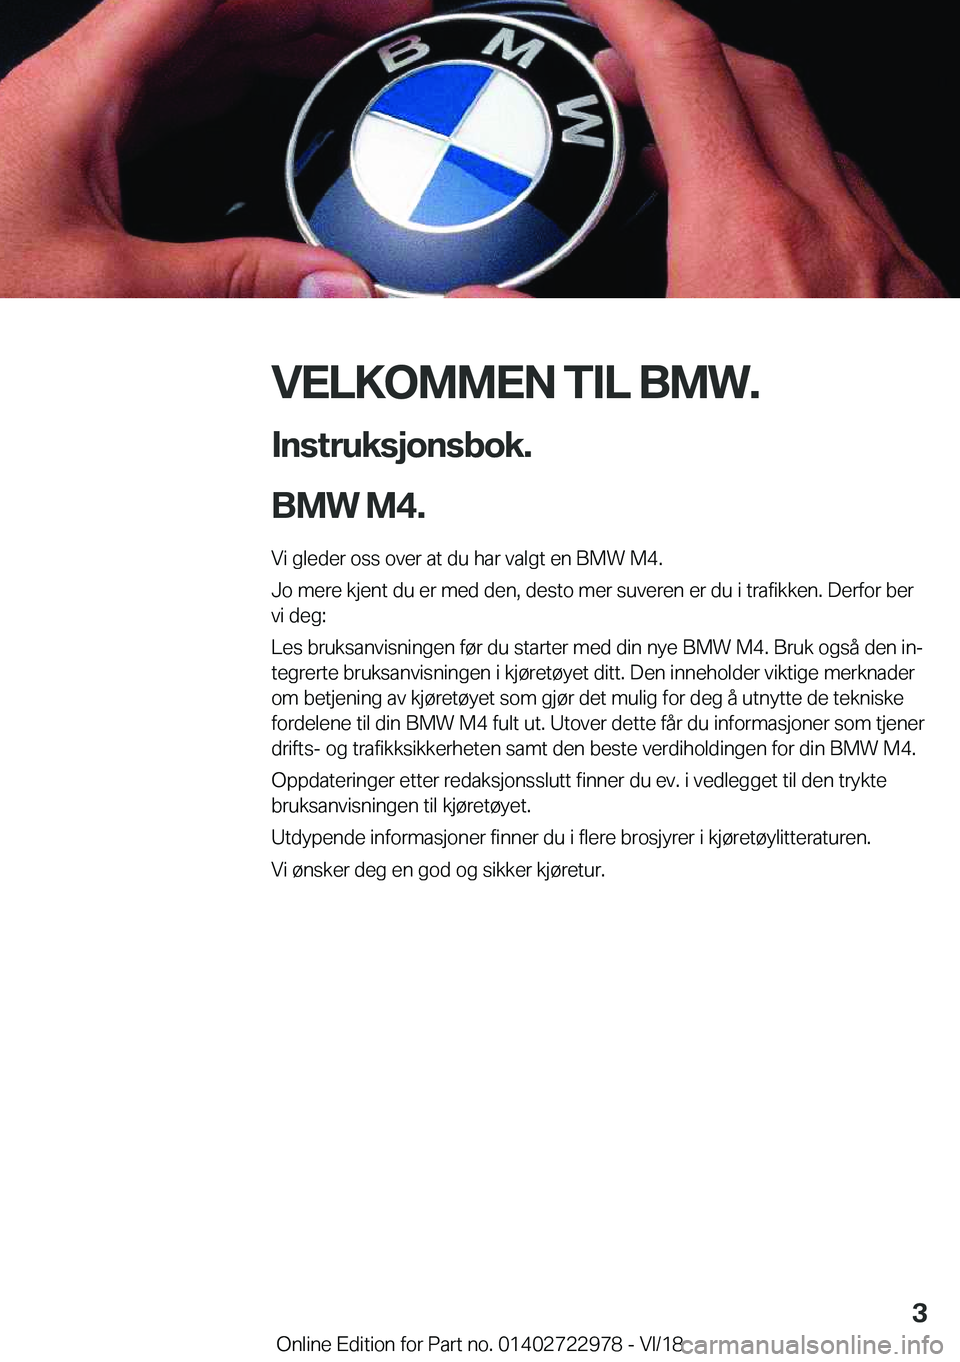 BMW M4 2019  InstruksjonsbØker (in Norwegian) �V�E�L�K�O�M�M�E�N��T�I�L��B�M�W�.�I�n�s�t�r�u�k�s�j�o�n�s�b�o�k�.
�B�M�W��M�4�.
�V�i��g�l�e�d�e�r��o�s�s��o�v�e�r��a�t��d�u��h�a�r��v�a�l�g�t��e�n��B�M�W��M�4�. �J�o��m�e�r�e��k�j�e�n�